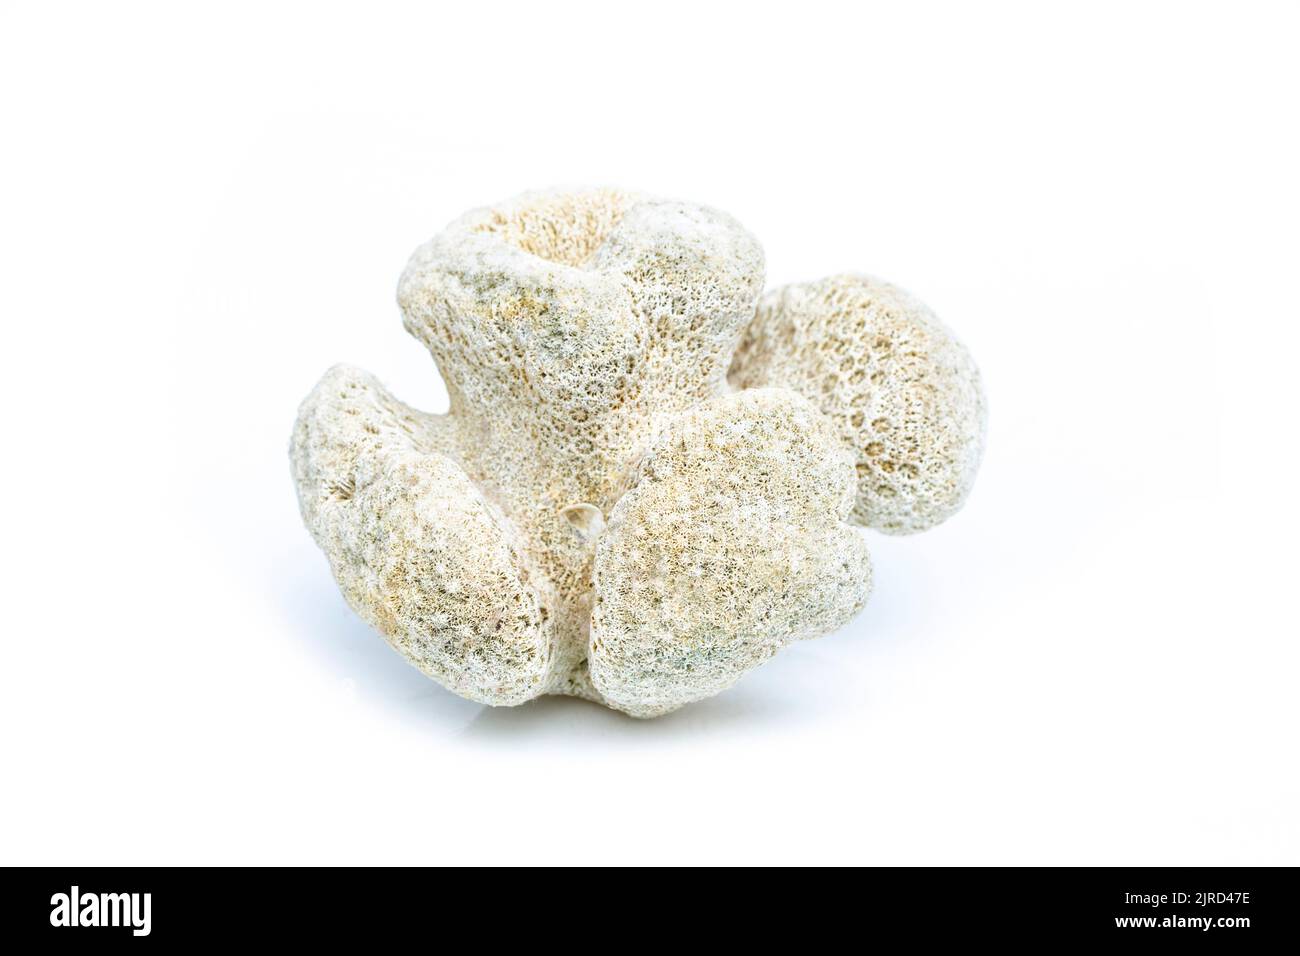 Immagine di cubi di corallo su sfondo bianco. Animali sottomarini. Foto Stock